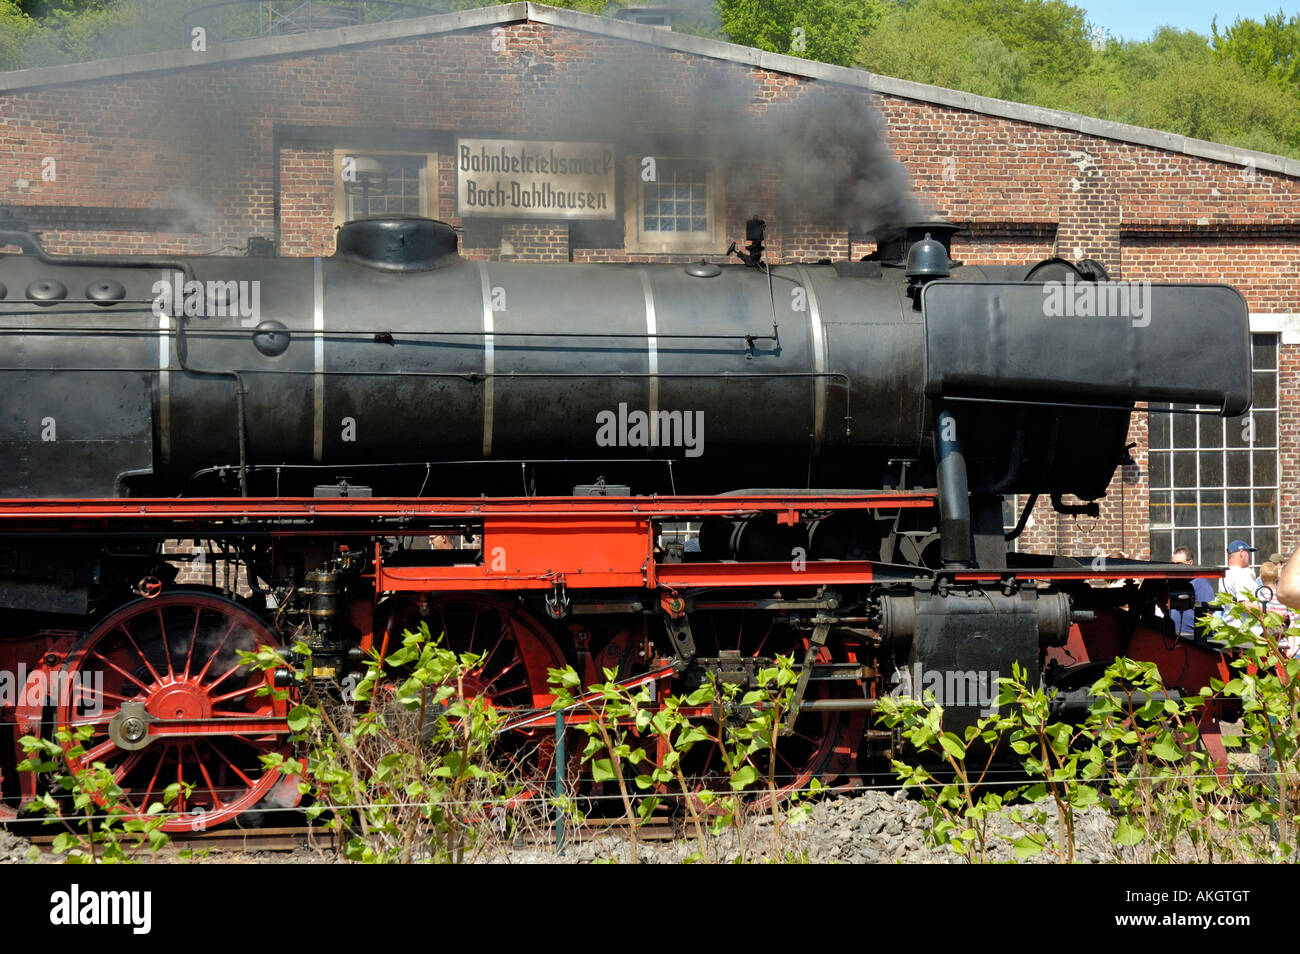 Locomotive à vapeur conservés en action au cours de 30e anniversaire, Musée ferroviaire Bochum (plus grand pays) en Allemagne. Banque D'Images